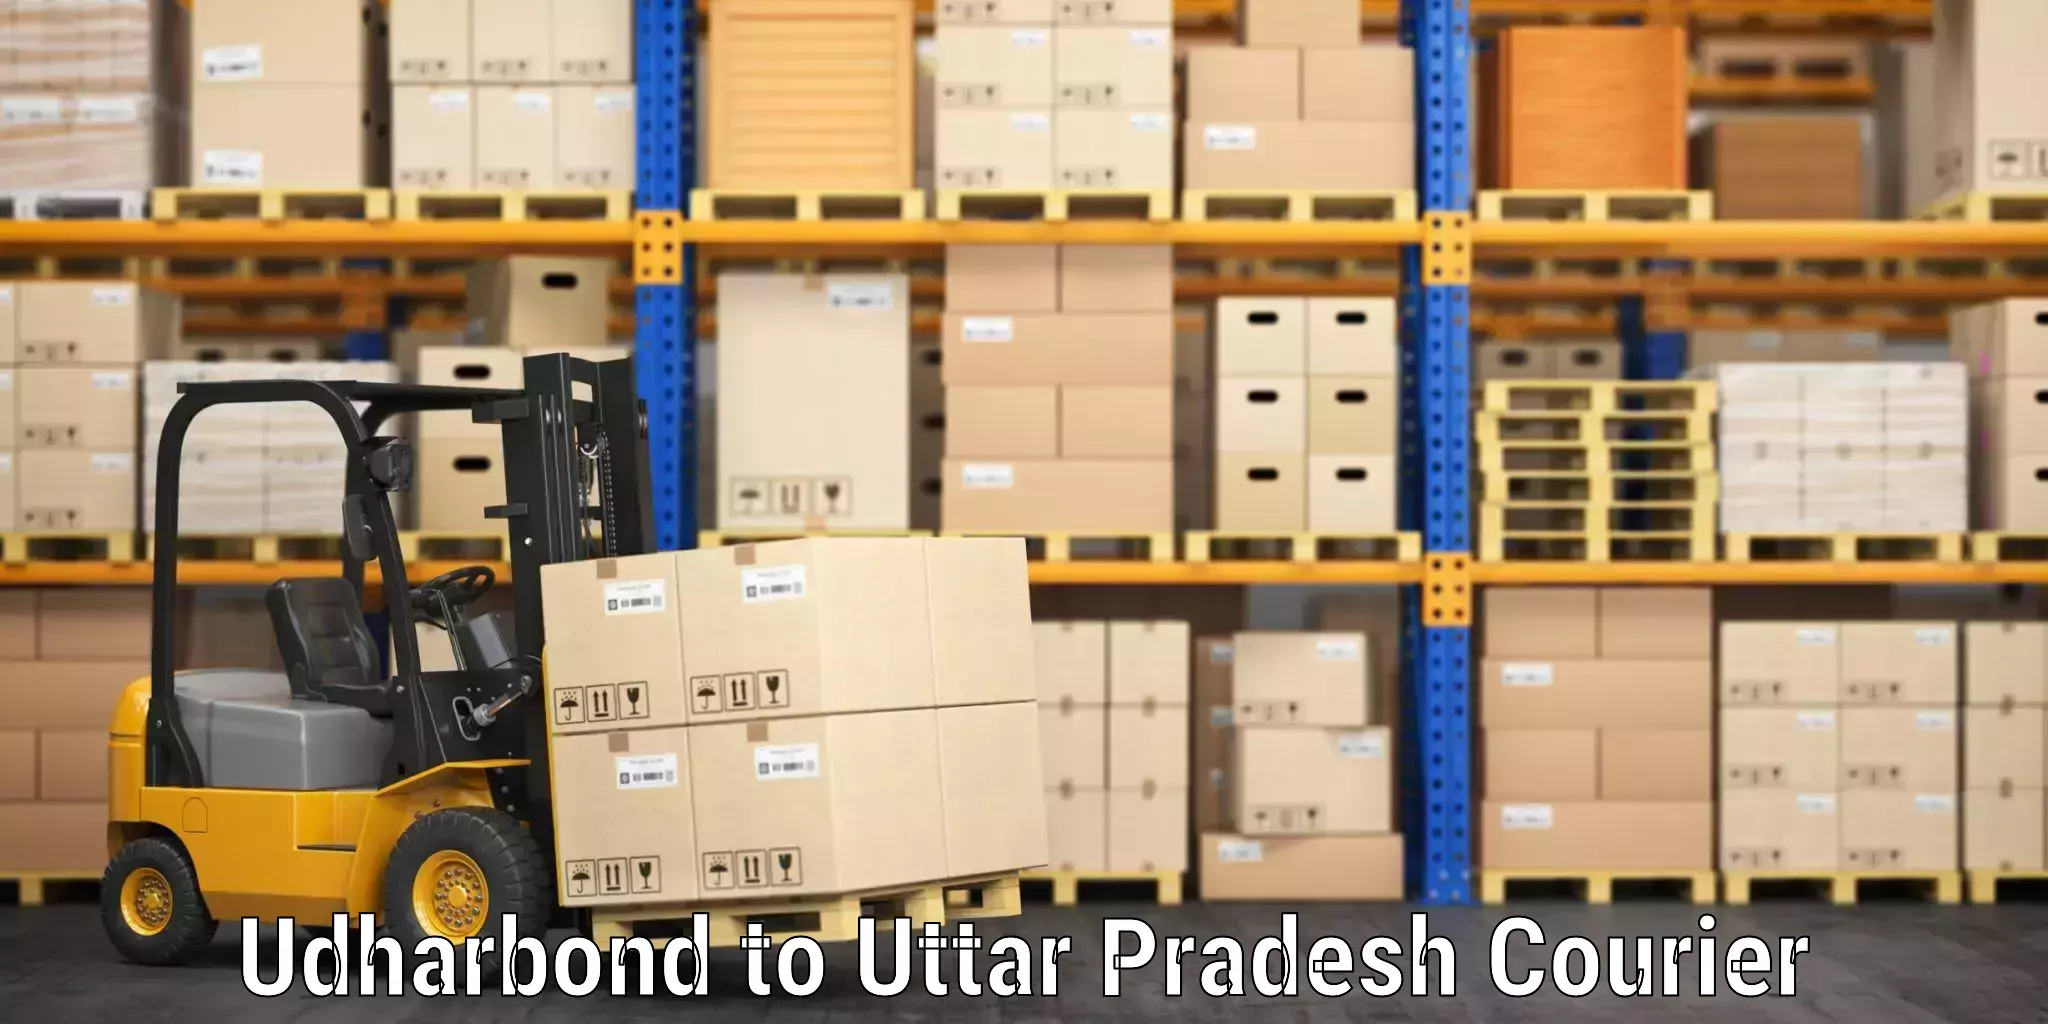 Luggage shipping estimate Udharbond to Bulandshahr